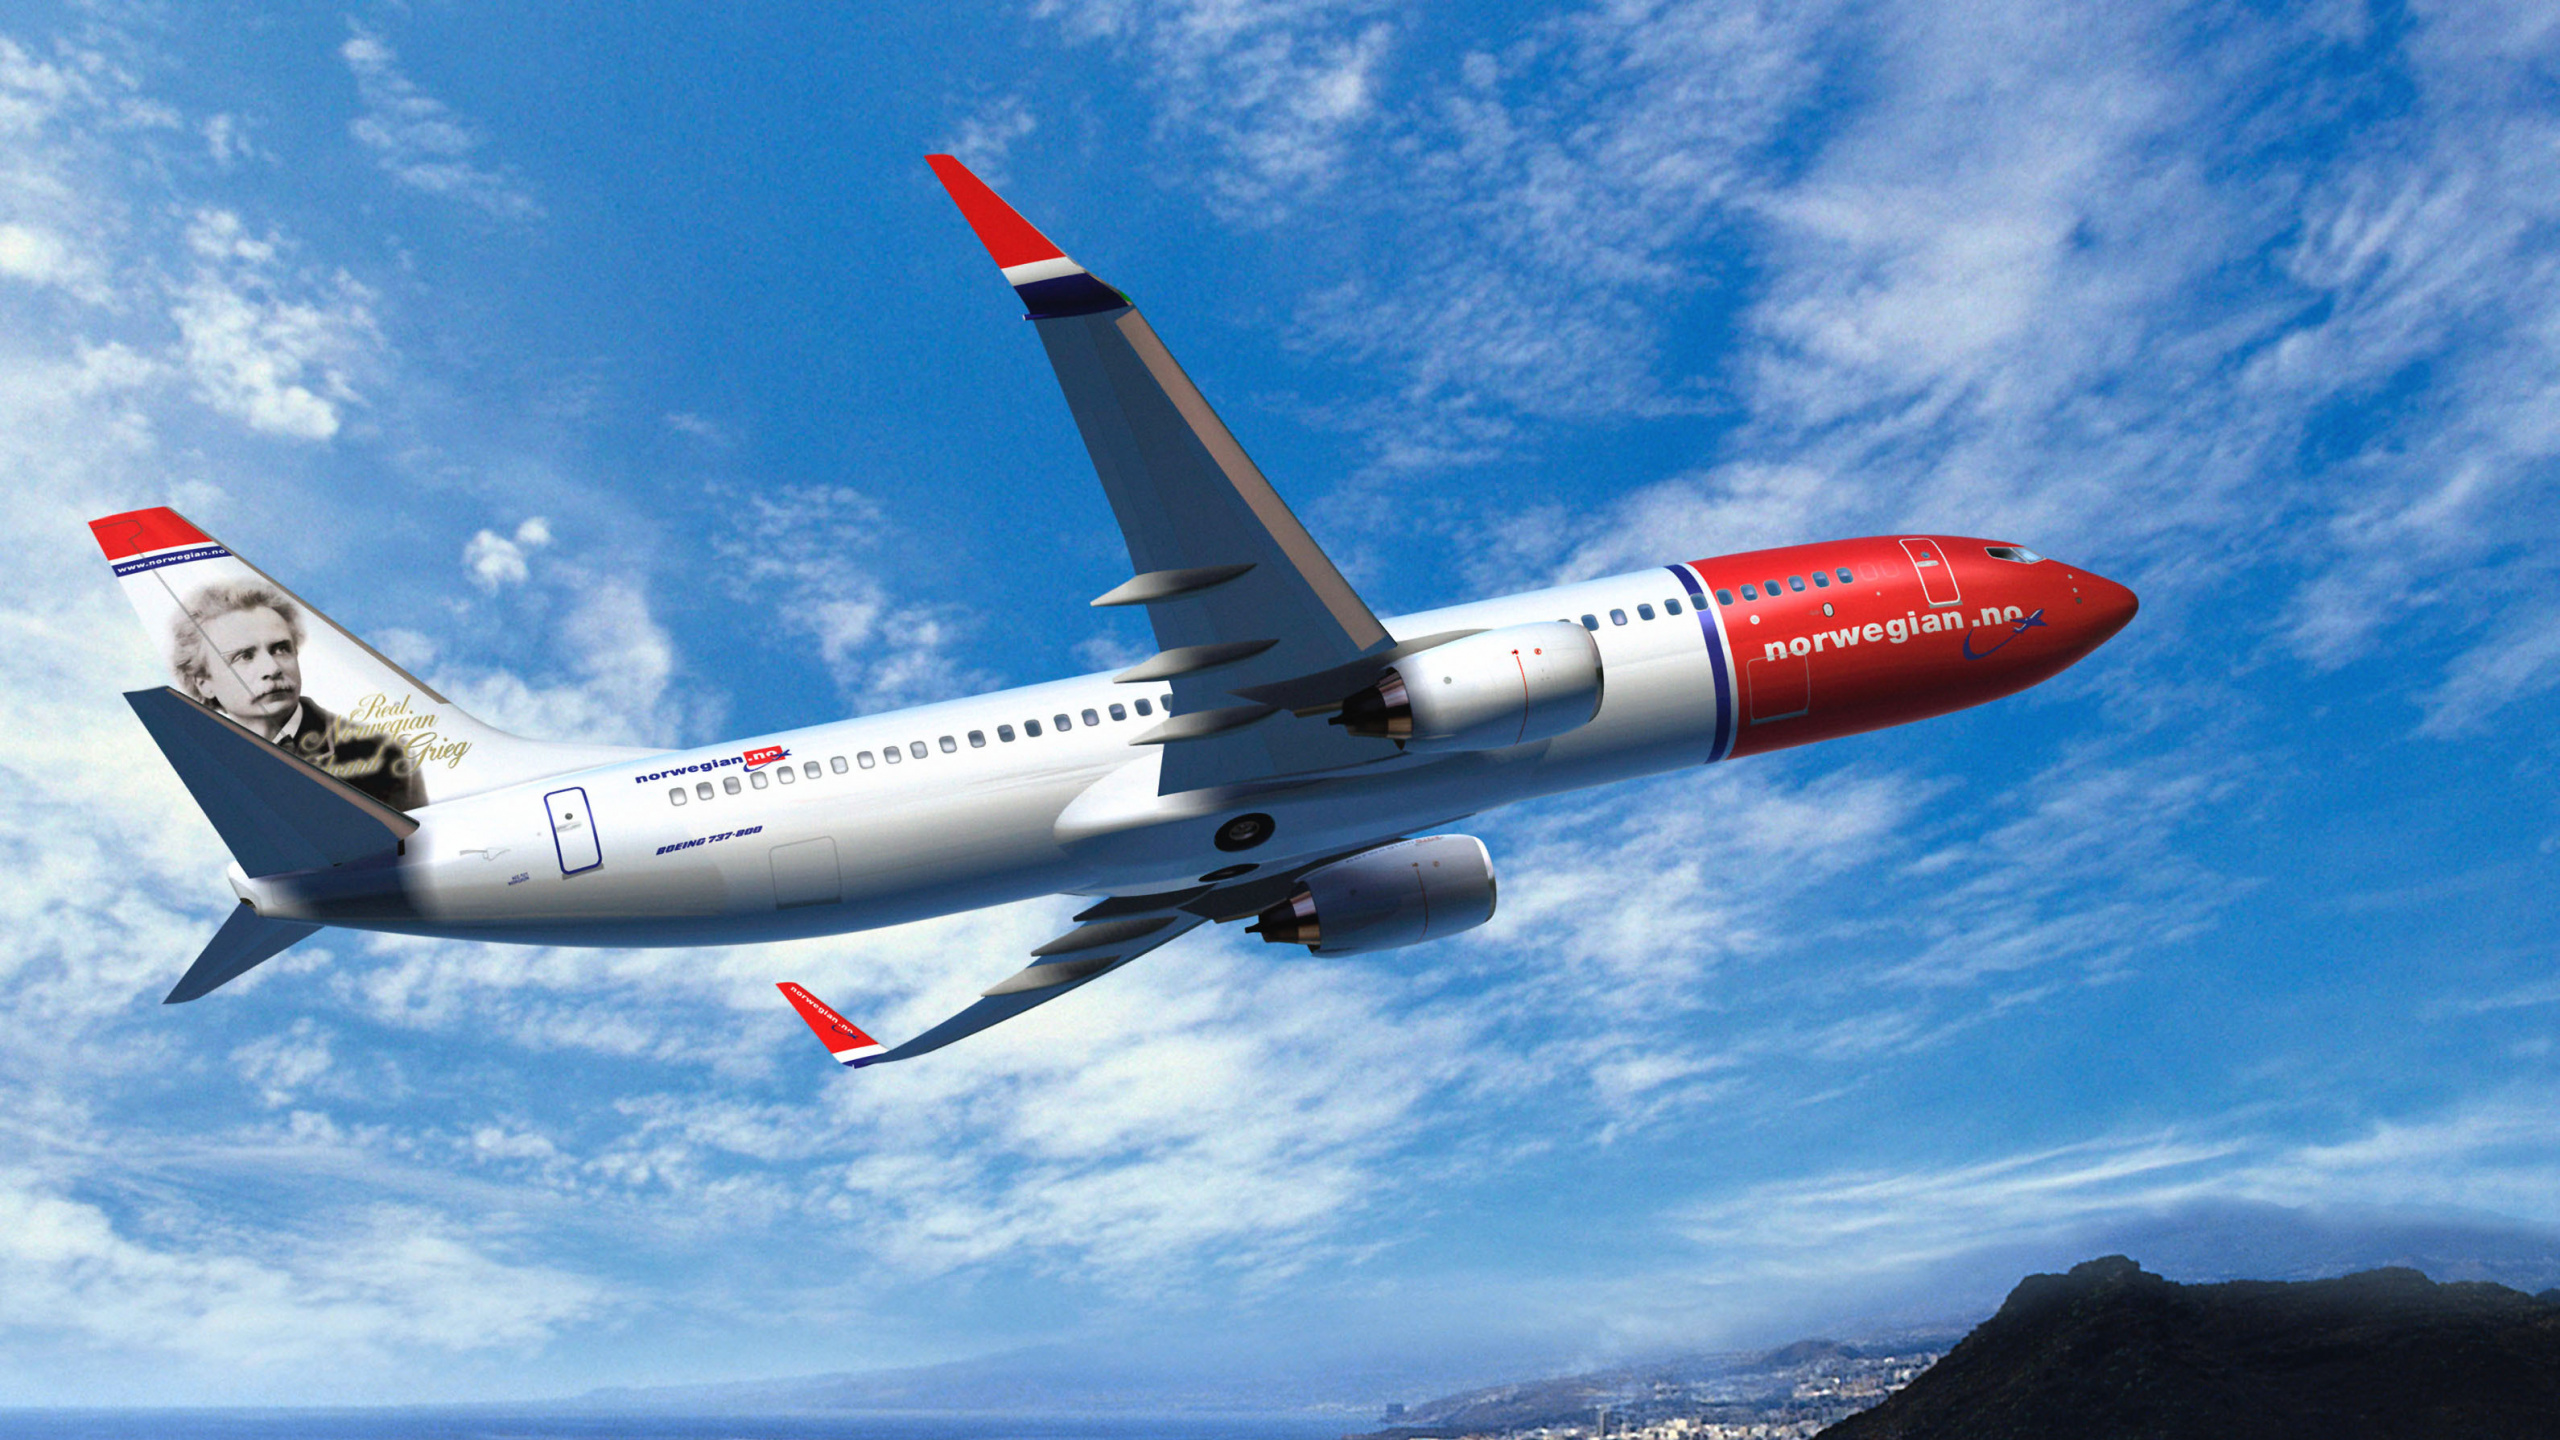 Weißes Und Rotes Flugzeug, Das Tagsüber Unter Blauem Himmel Fliegt. Wallpaper in 2560x1440 Resolution